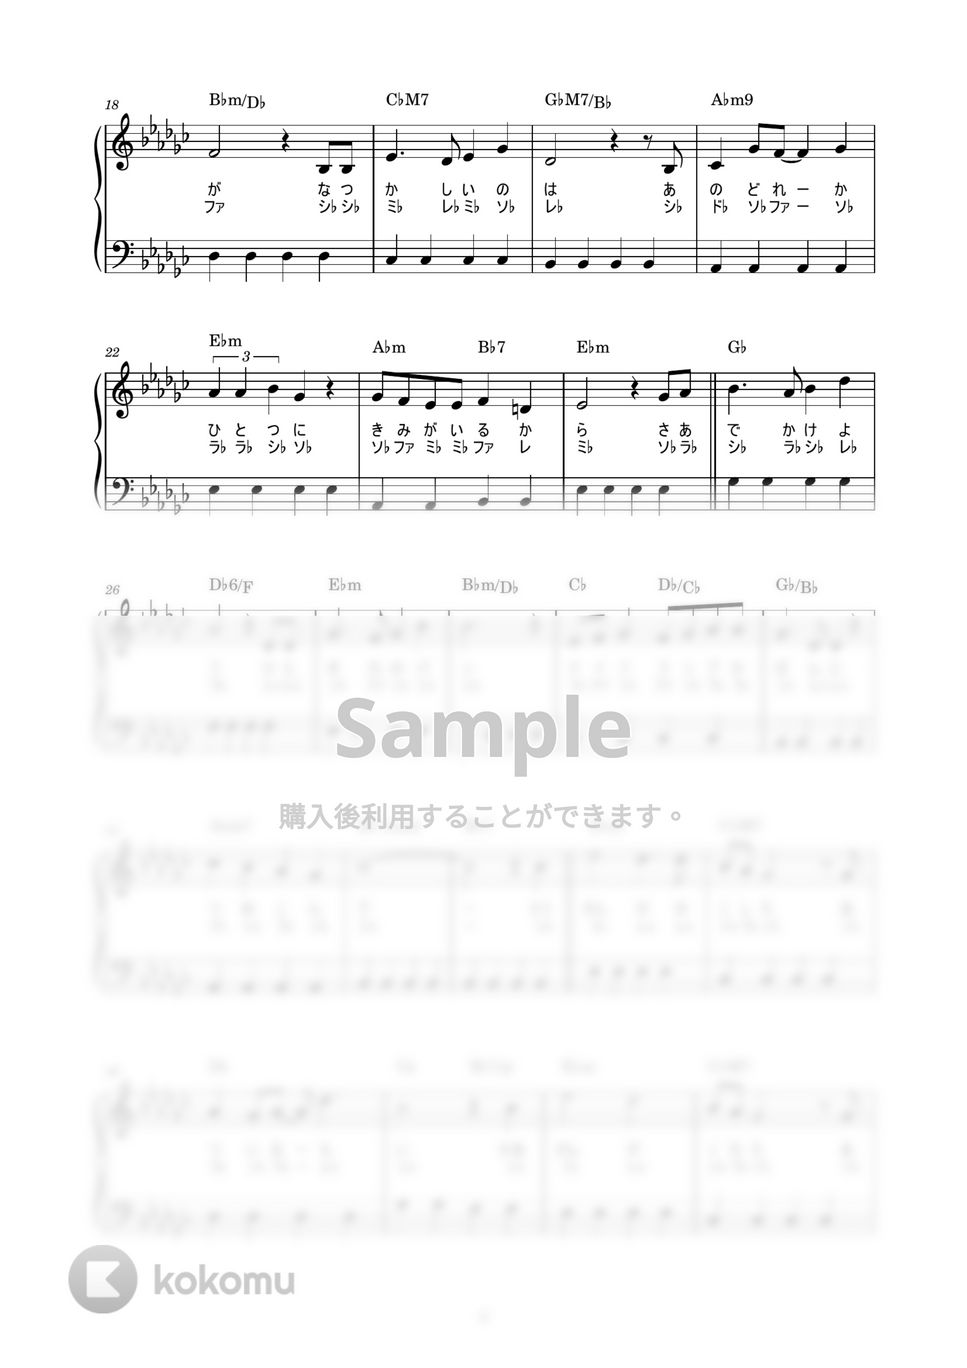 井上あずみ - 君をのせて (かんたん / 歌詞付き / ドレミ付き / 初心者) by piano.tokyo